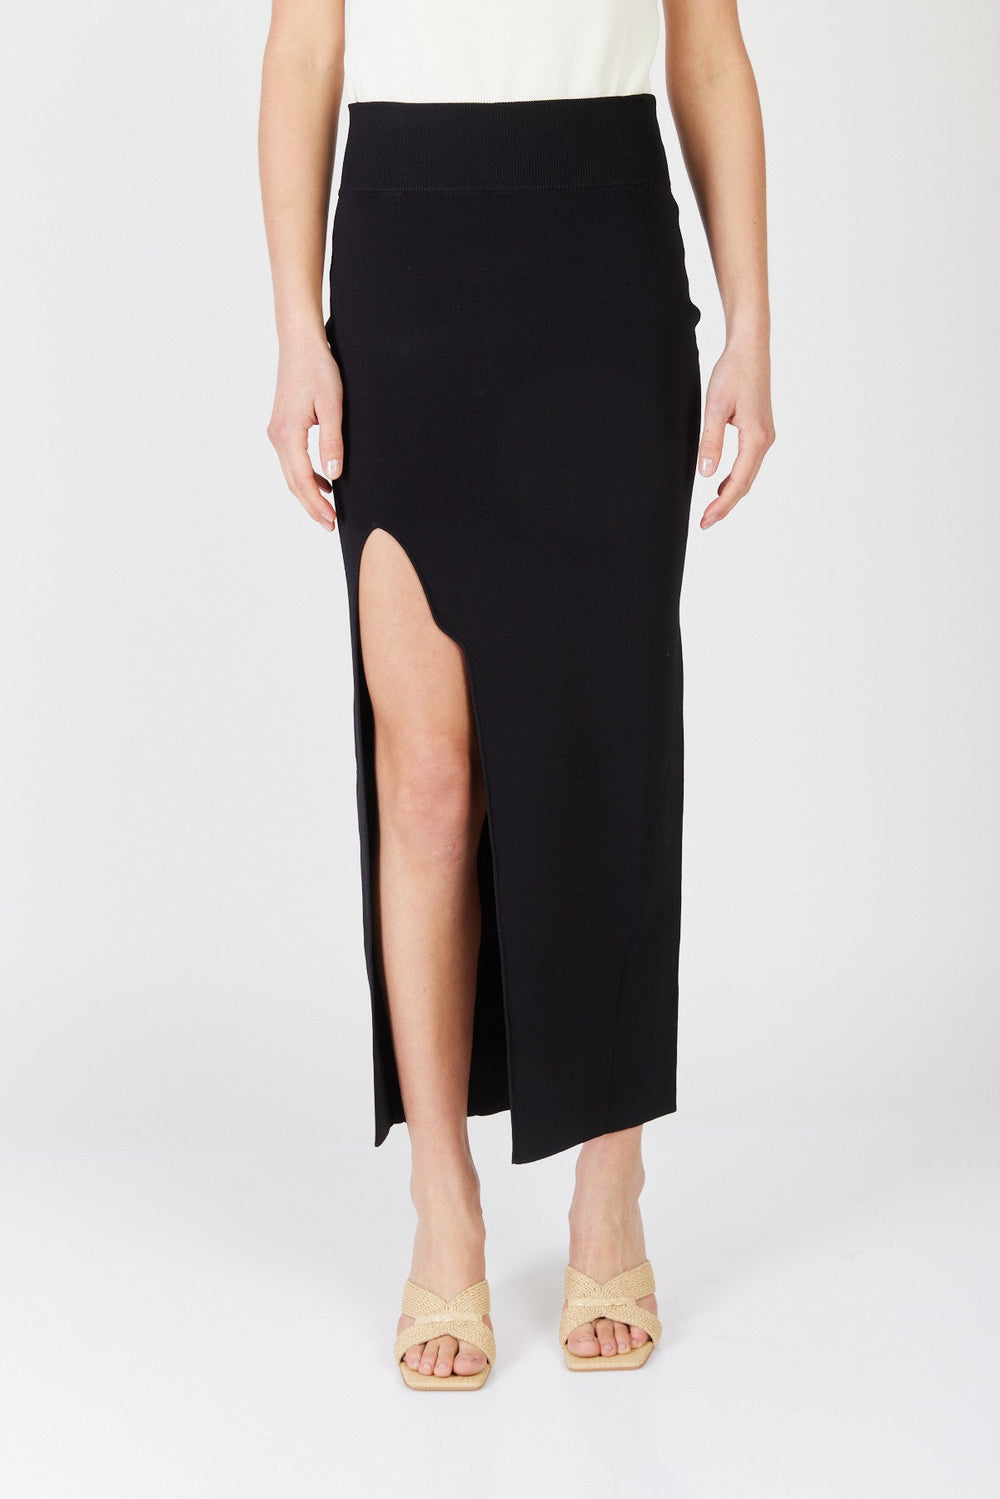 חצאית מידי סרוגה לונה עם שסע קדמי בצבע שחור - Mother Ofall